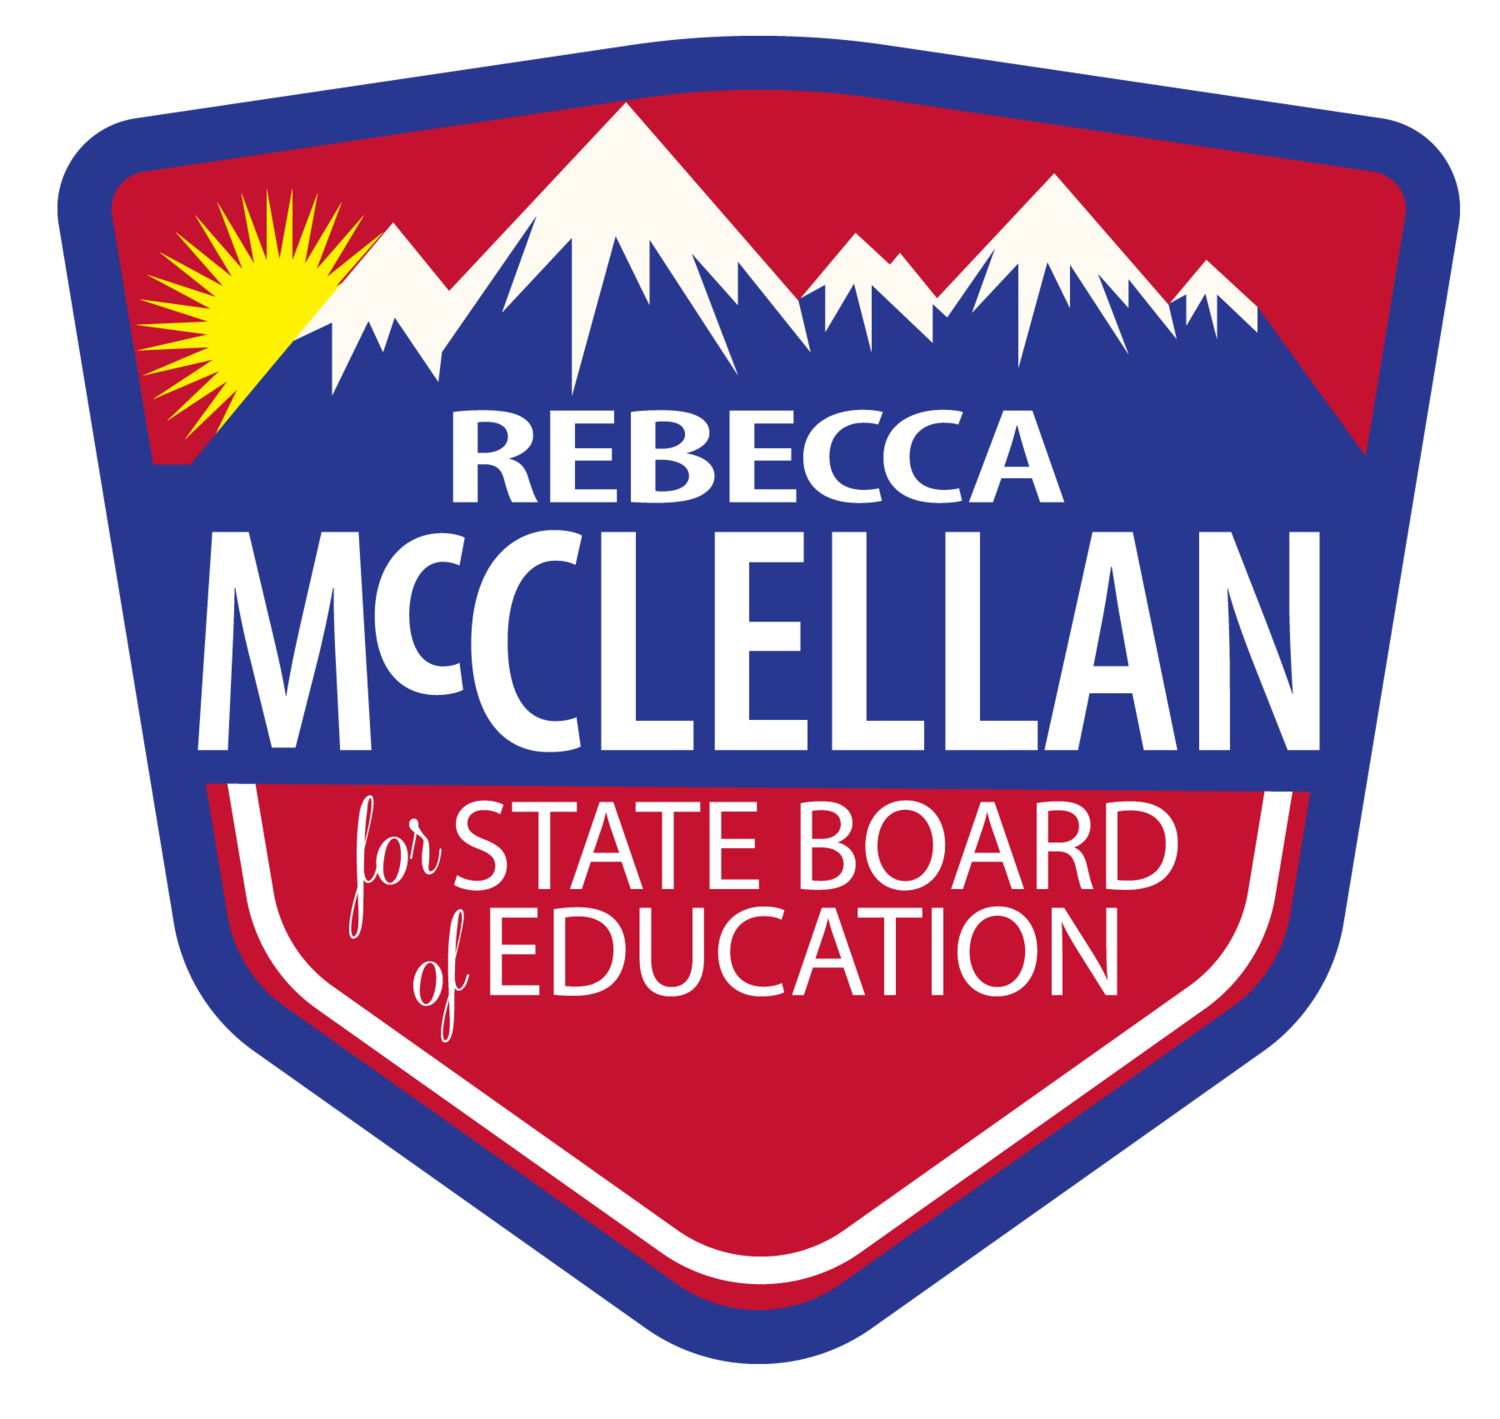 McClellan for Colorado